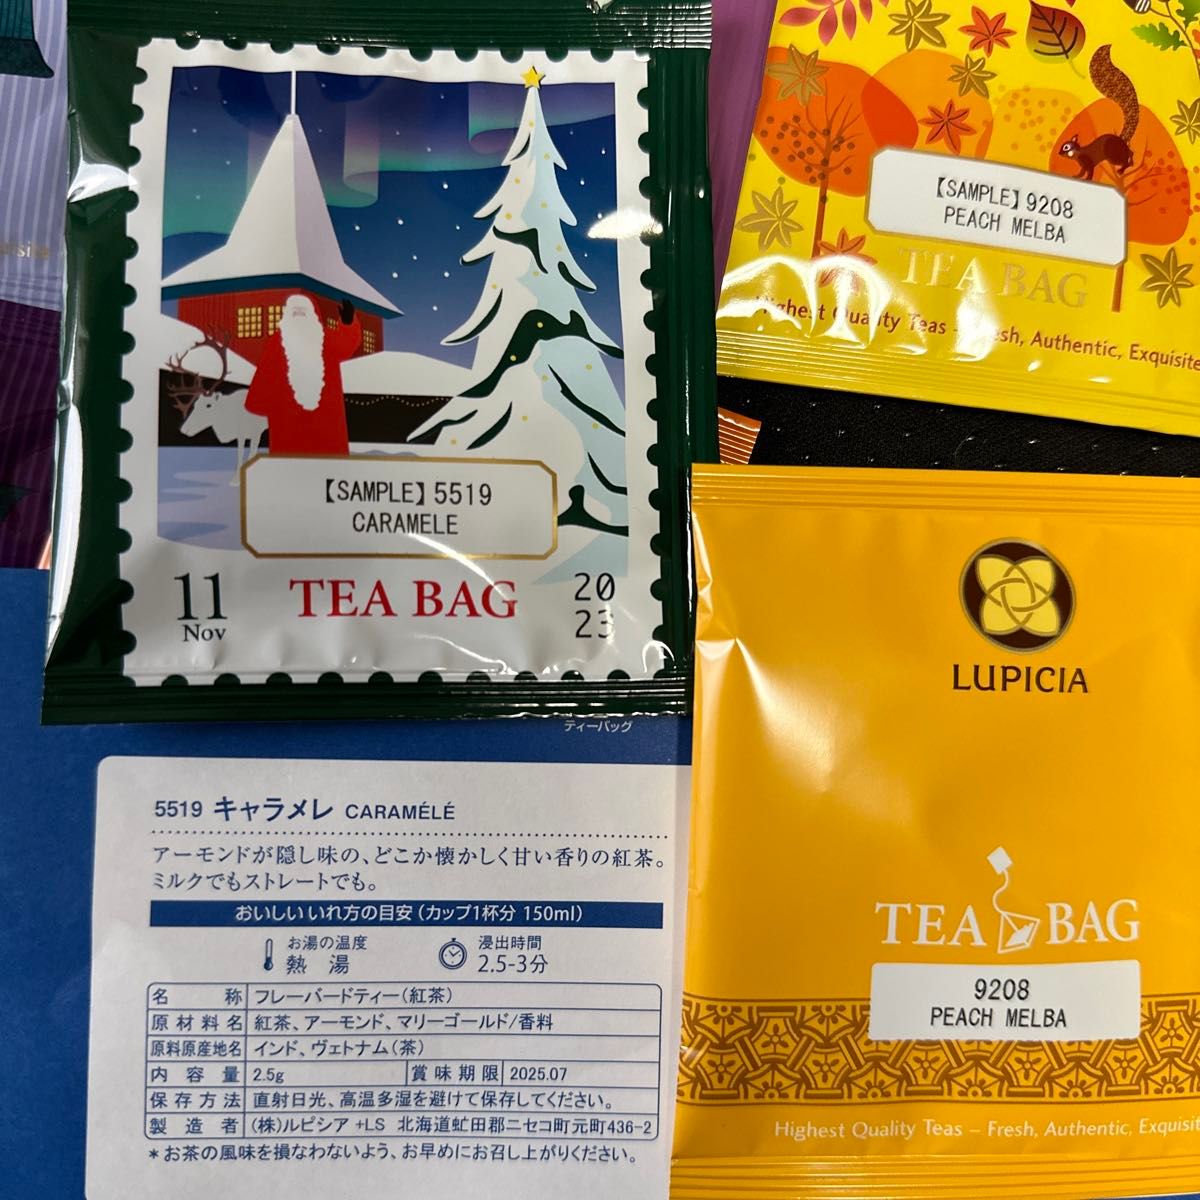 【送料無料】ルピシア 癒しのティータイム ティーバック紅茶 10種類セット gpa0009 ダルマ ピーチメルバ ロゼロワイヤル